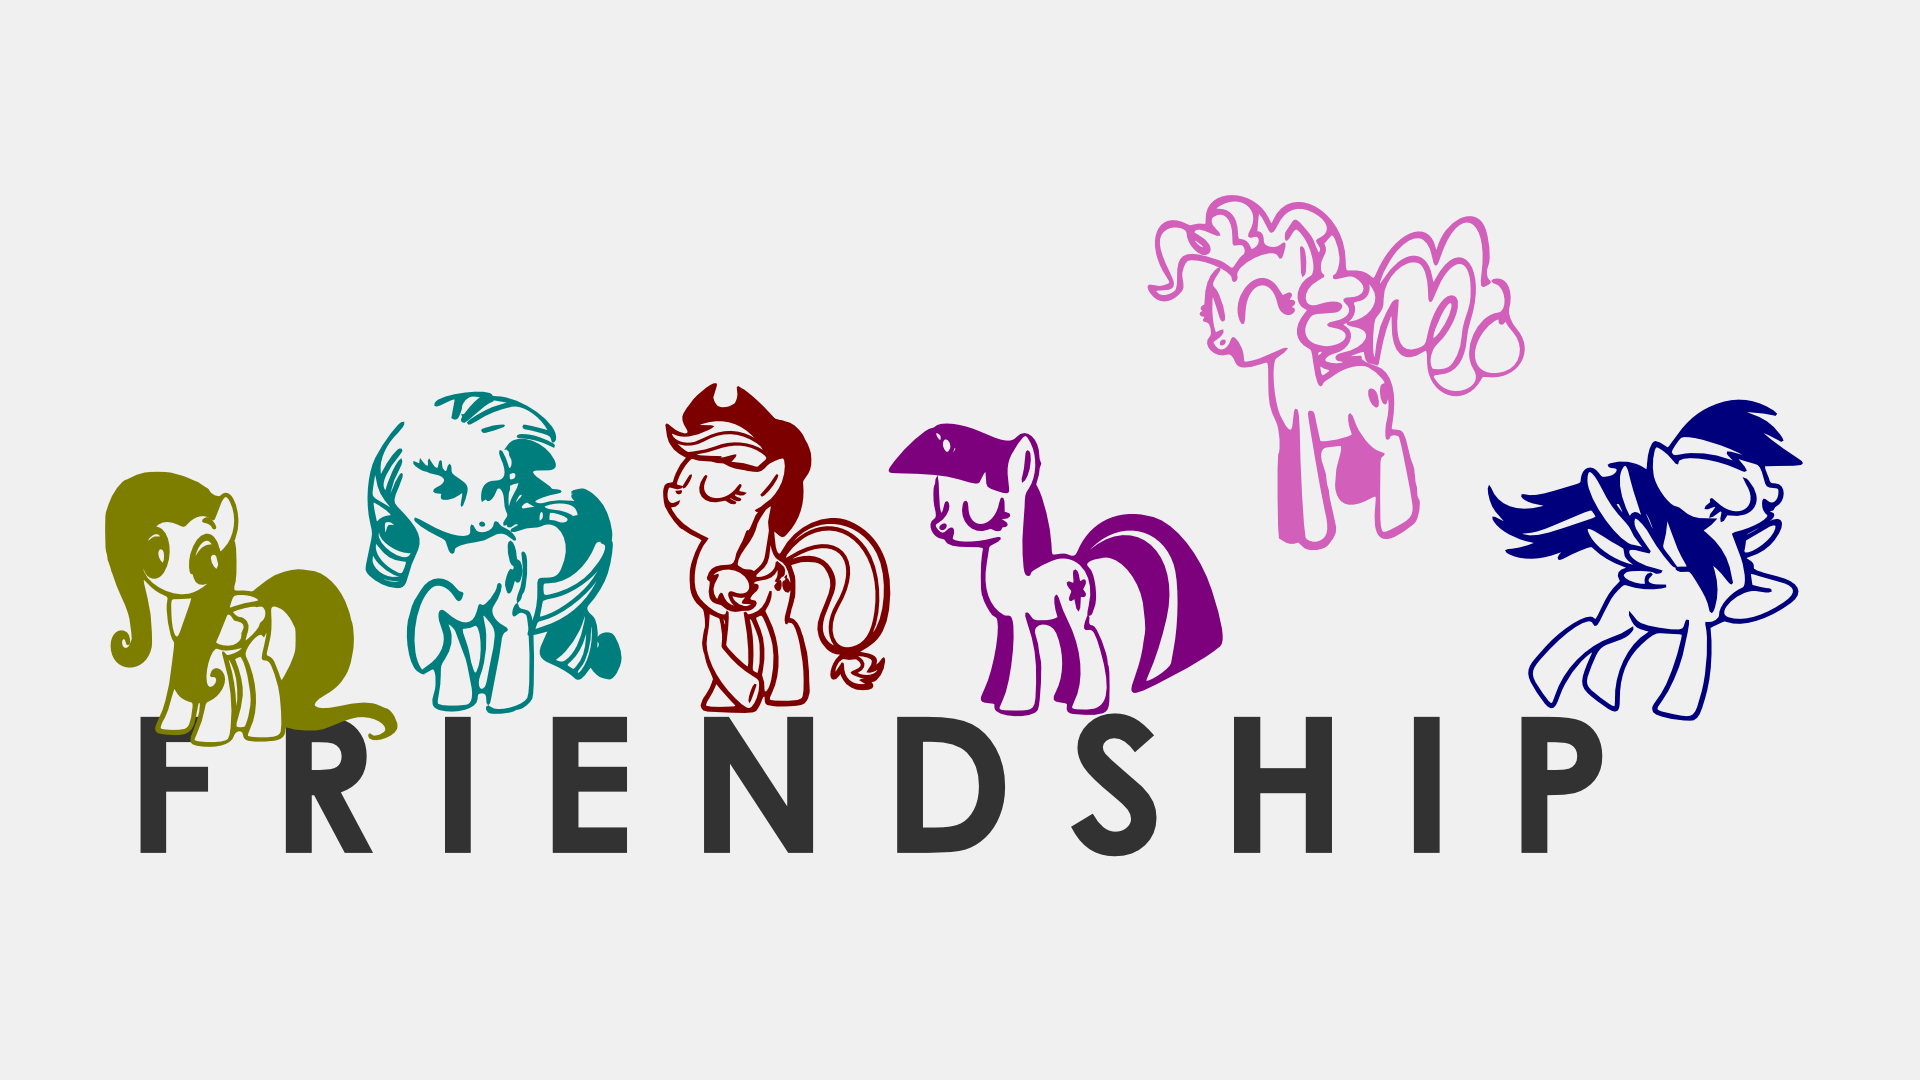 Youtube ponies. Пони логотип. Пони надпись. My little Pony надпись. Пони магия дружбы.